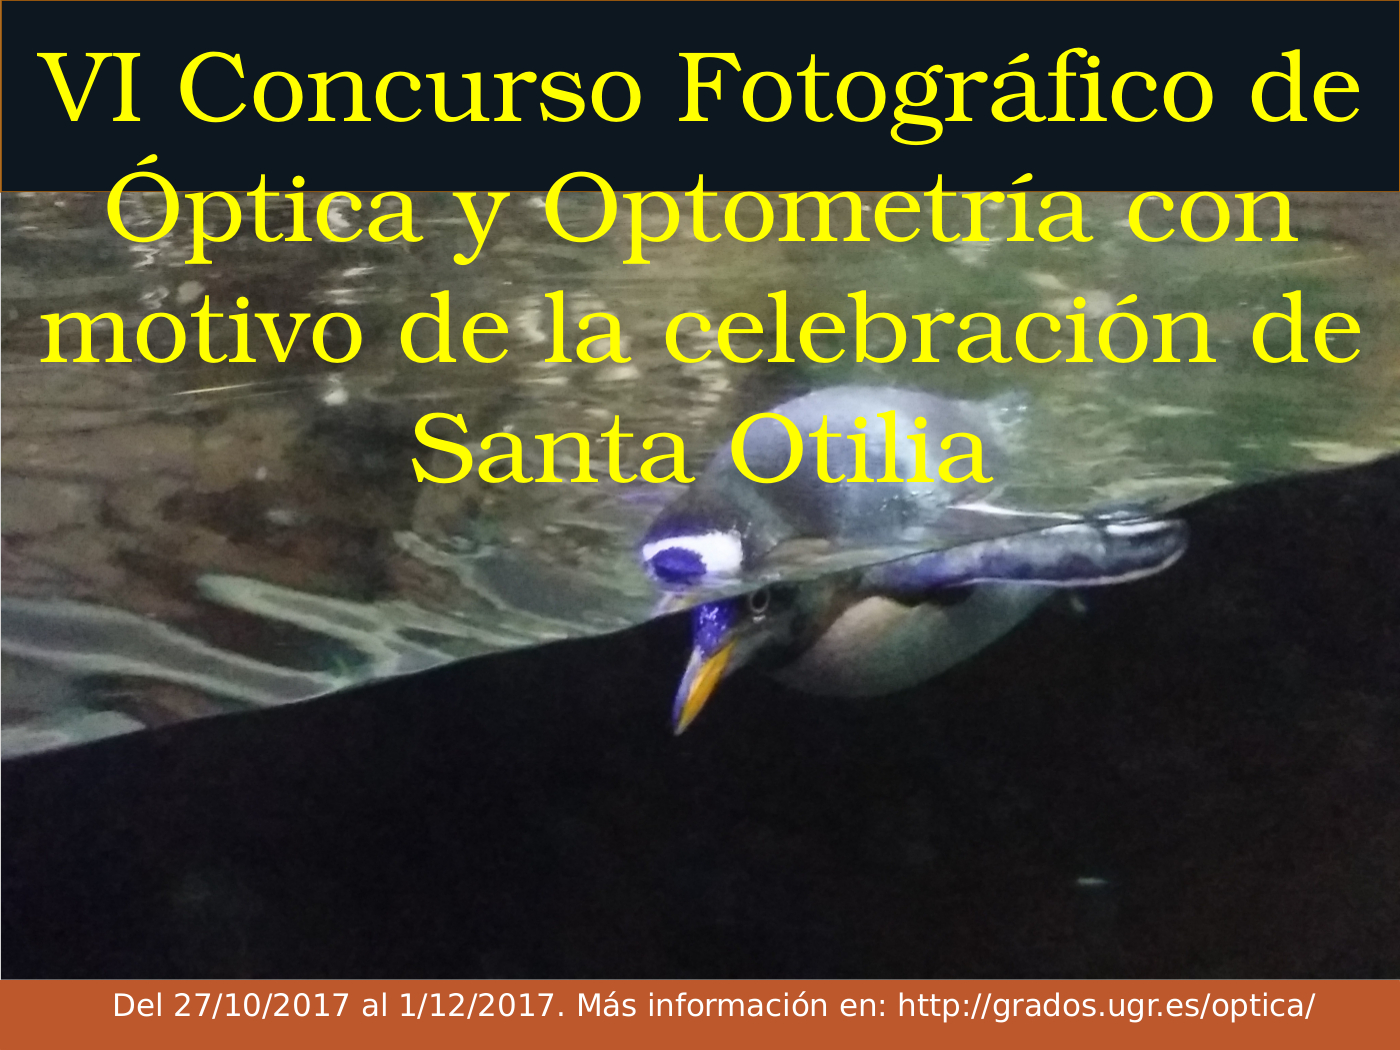 VI Concurso Fotográfico de Óptica y Optometría con motivo de la celebración de Santa Otilia